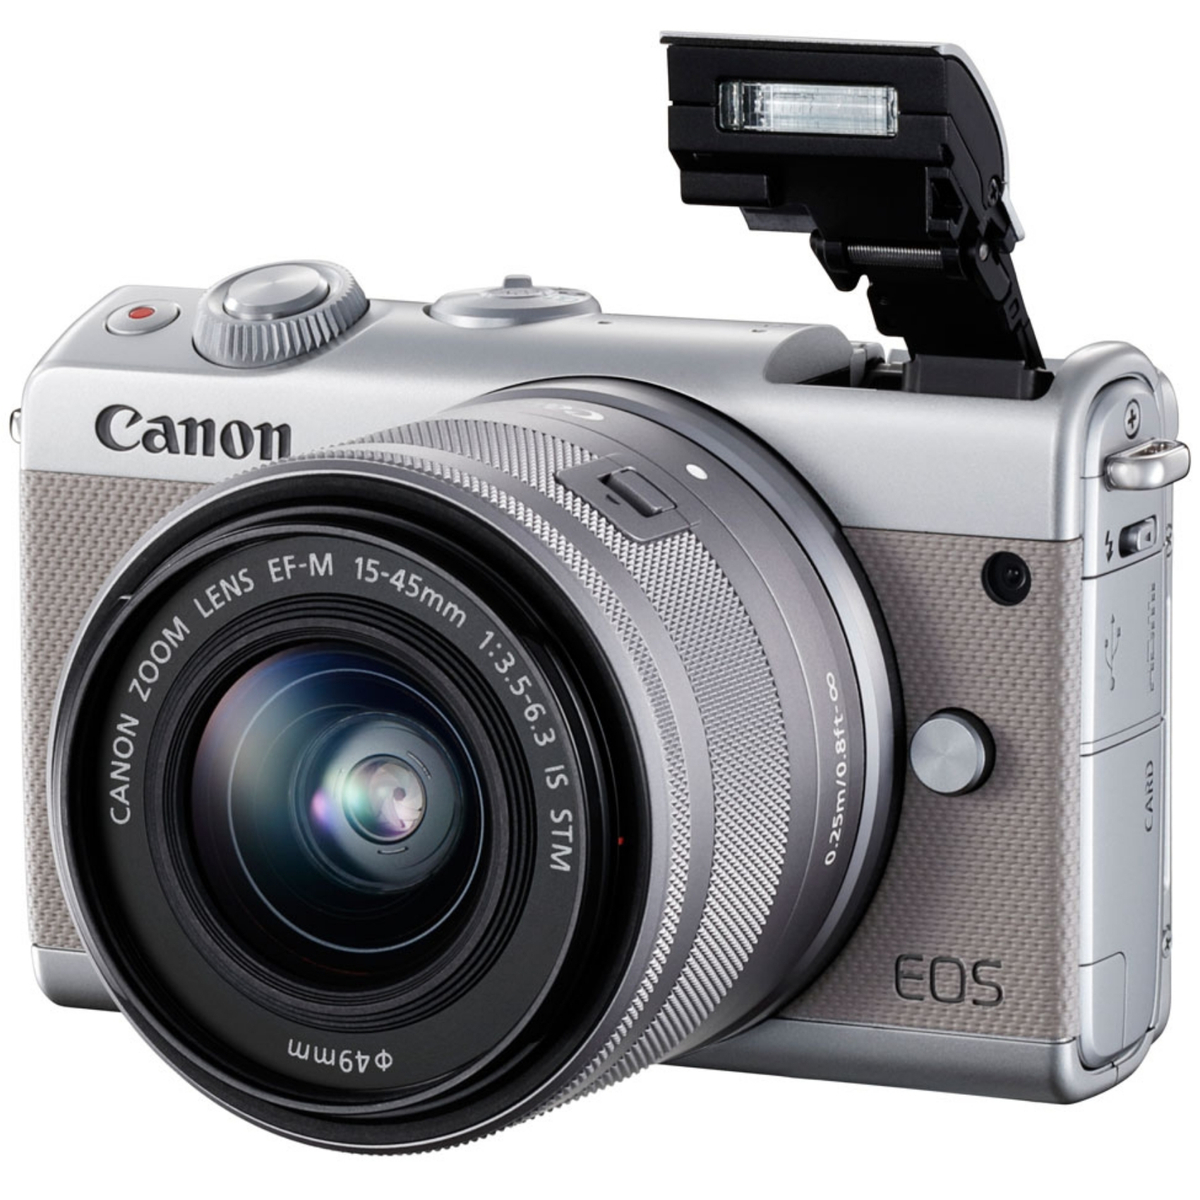 Canon キヤノン ミラーレス一眼カメラ EOS M100 EF-M15-45 IS STM ミラーレスカメラ レンズキット グレー 新品  デジタル一眼 ミラーレス カメラ 本体 デジカメ 一眼カメラ おしゃれ スマホ 連携 送料無料 | JAPAN CAMERA 楽天市場店